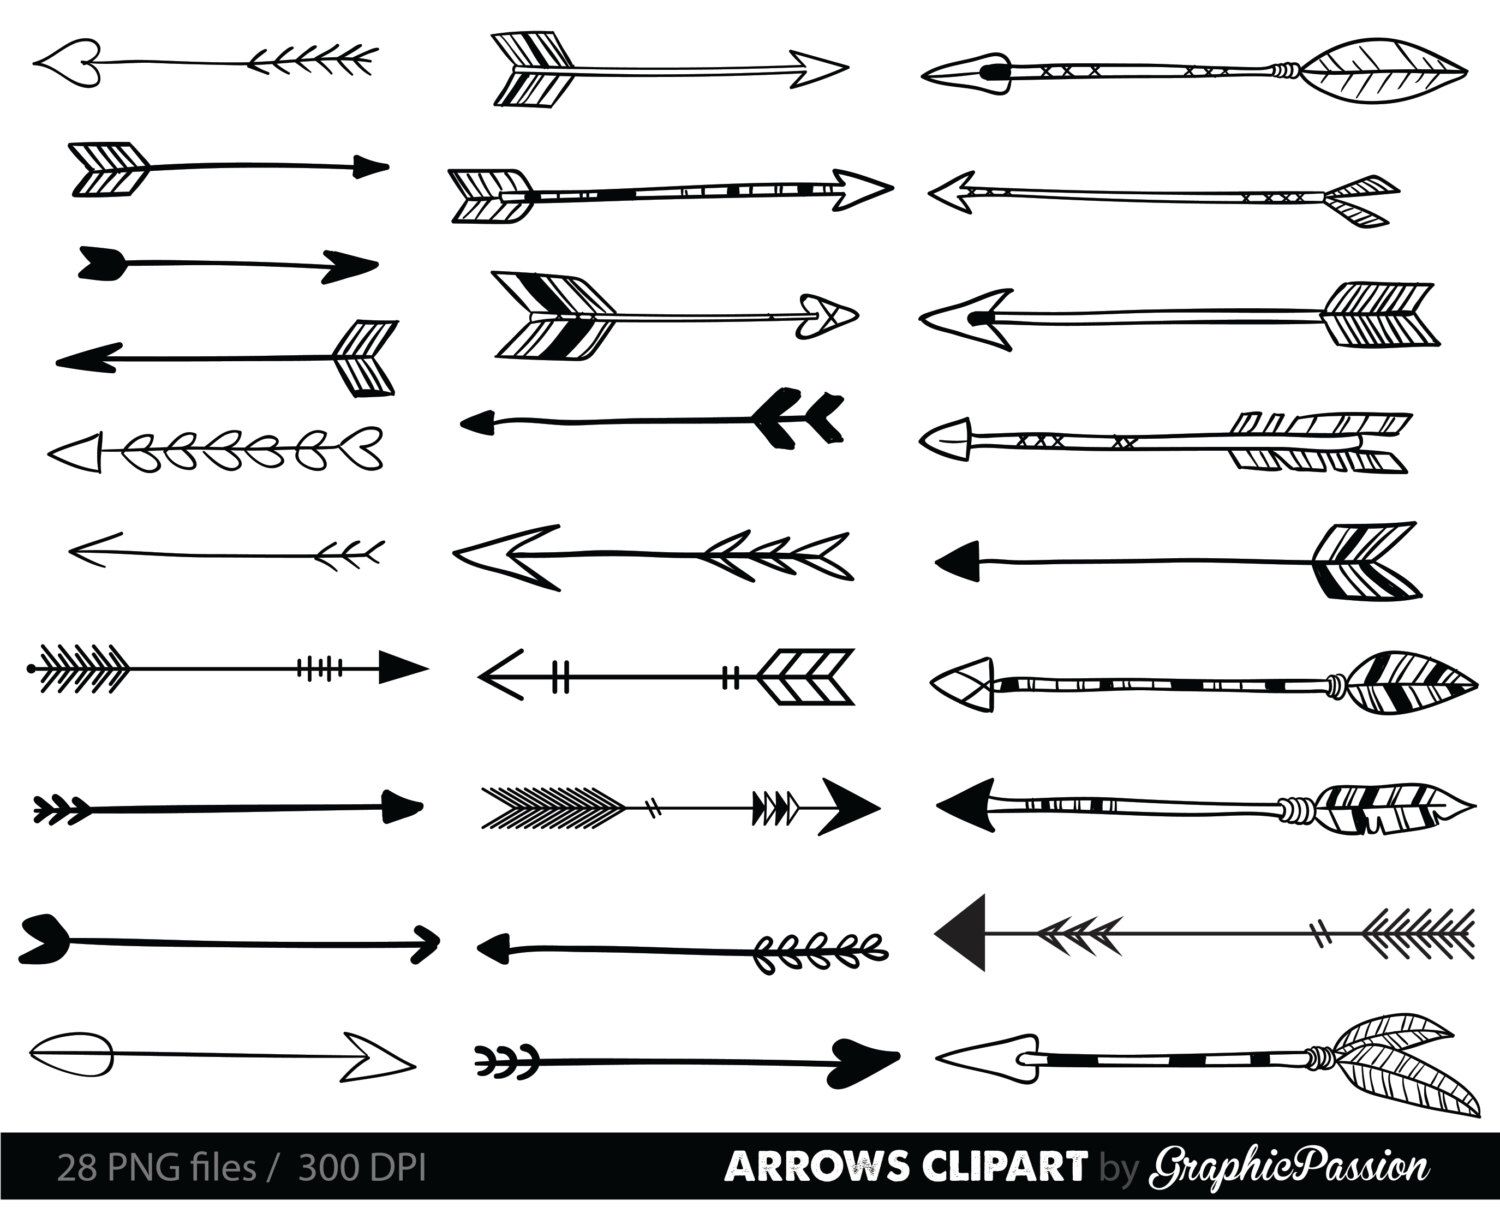 Arrows clip art, tribal arrow clipart, archery hand drawn arrows.